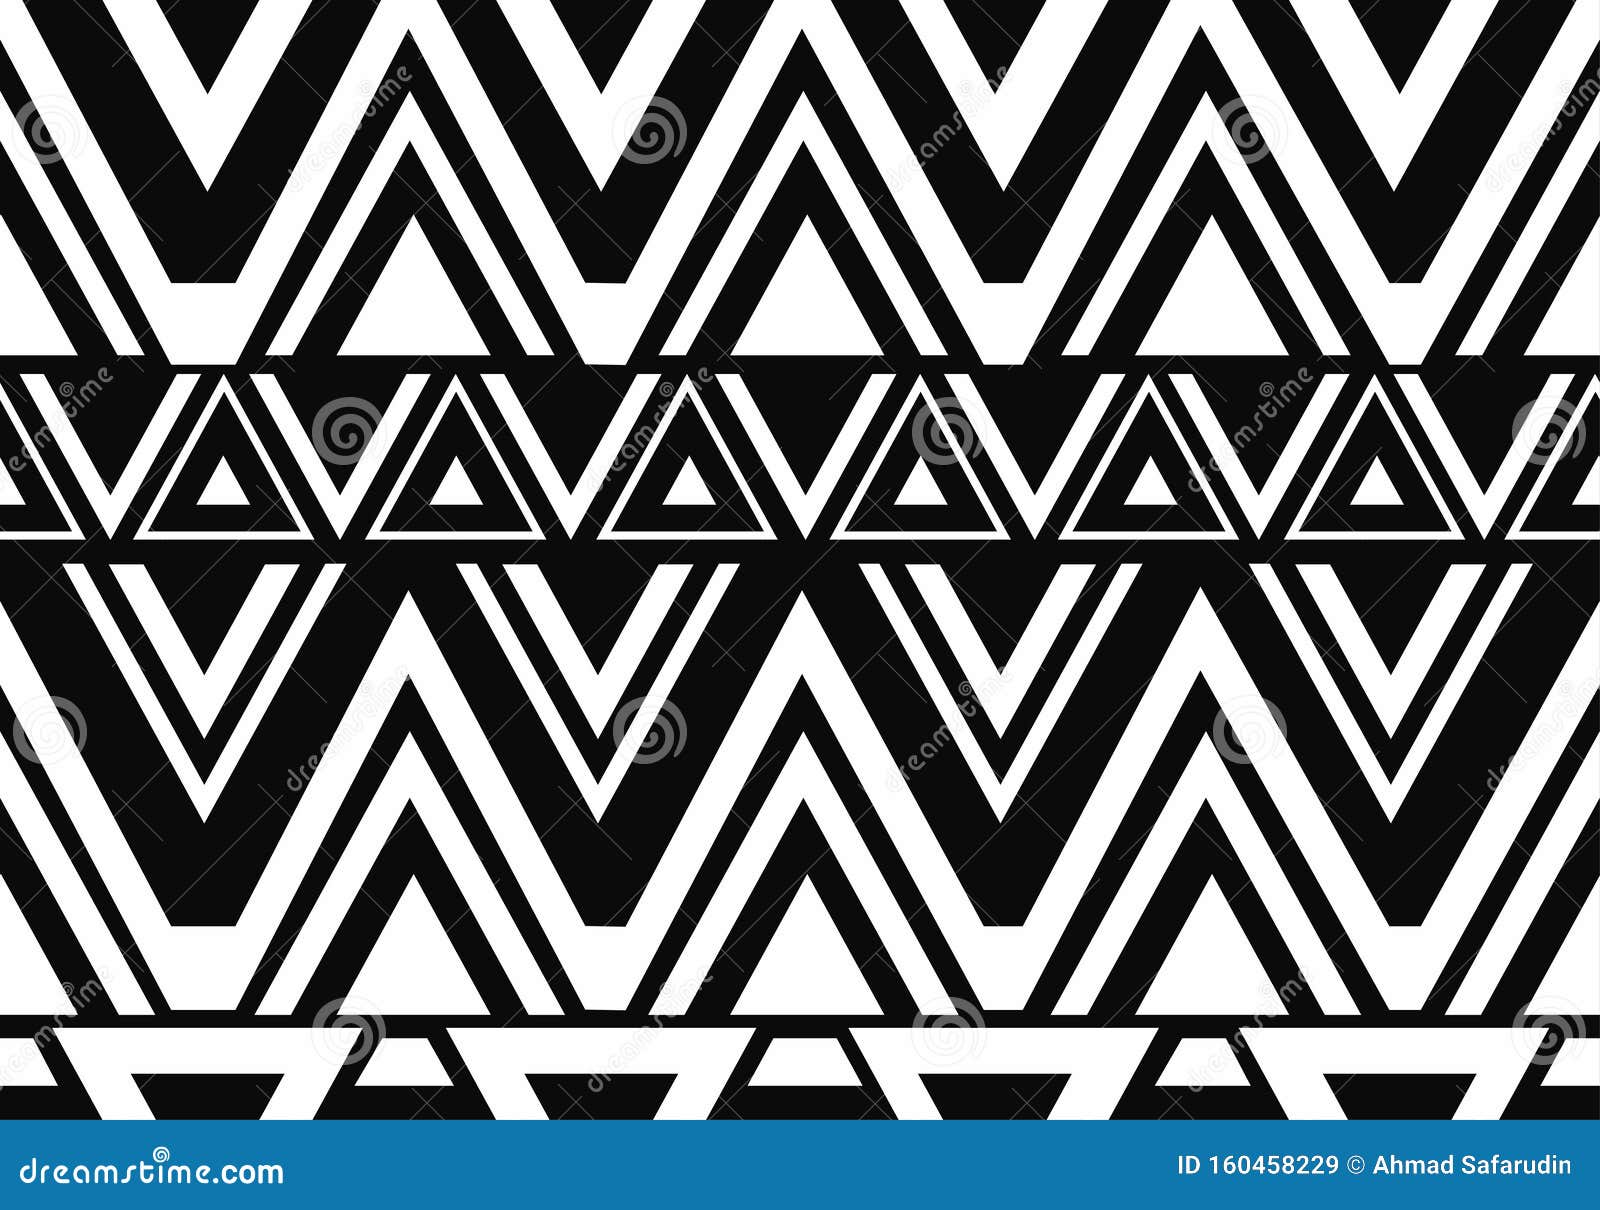 Trendy Maori Style Hand Drawn Maori Style Seamless Pattern Motifs ...